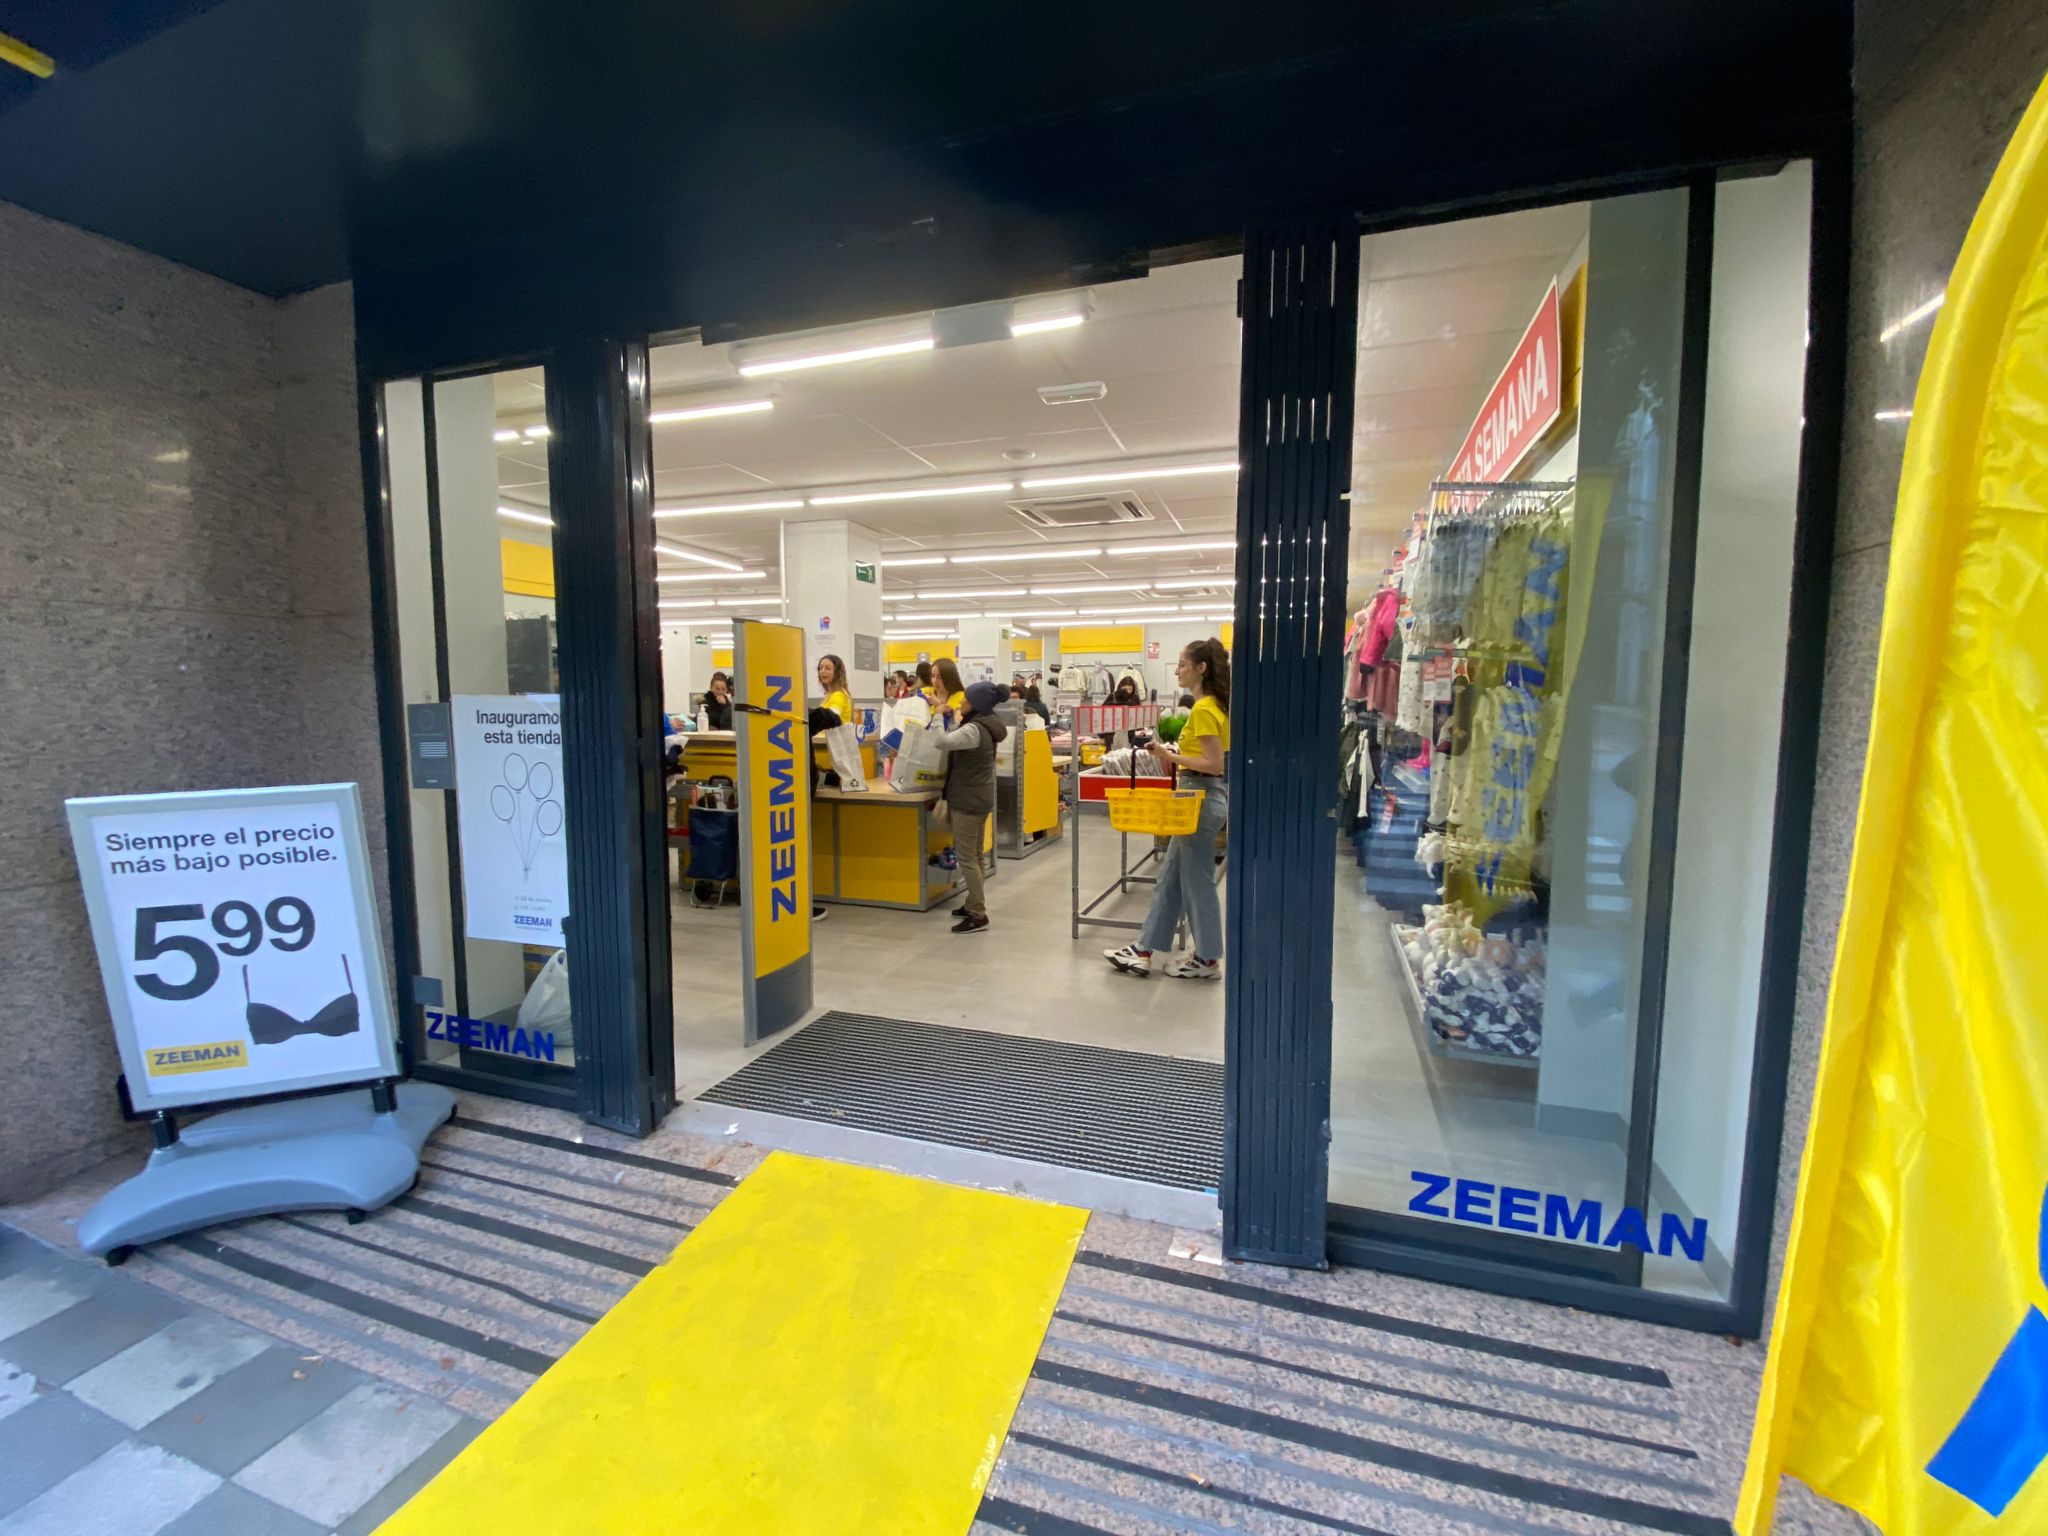 La multinacional Zeeman tienda ropa 'low cost' en Cuenca capital - de Cuenca